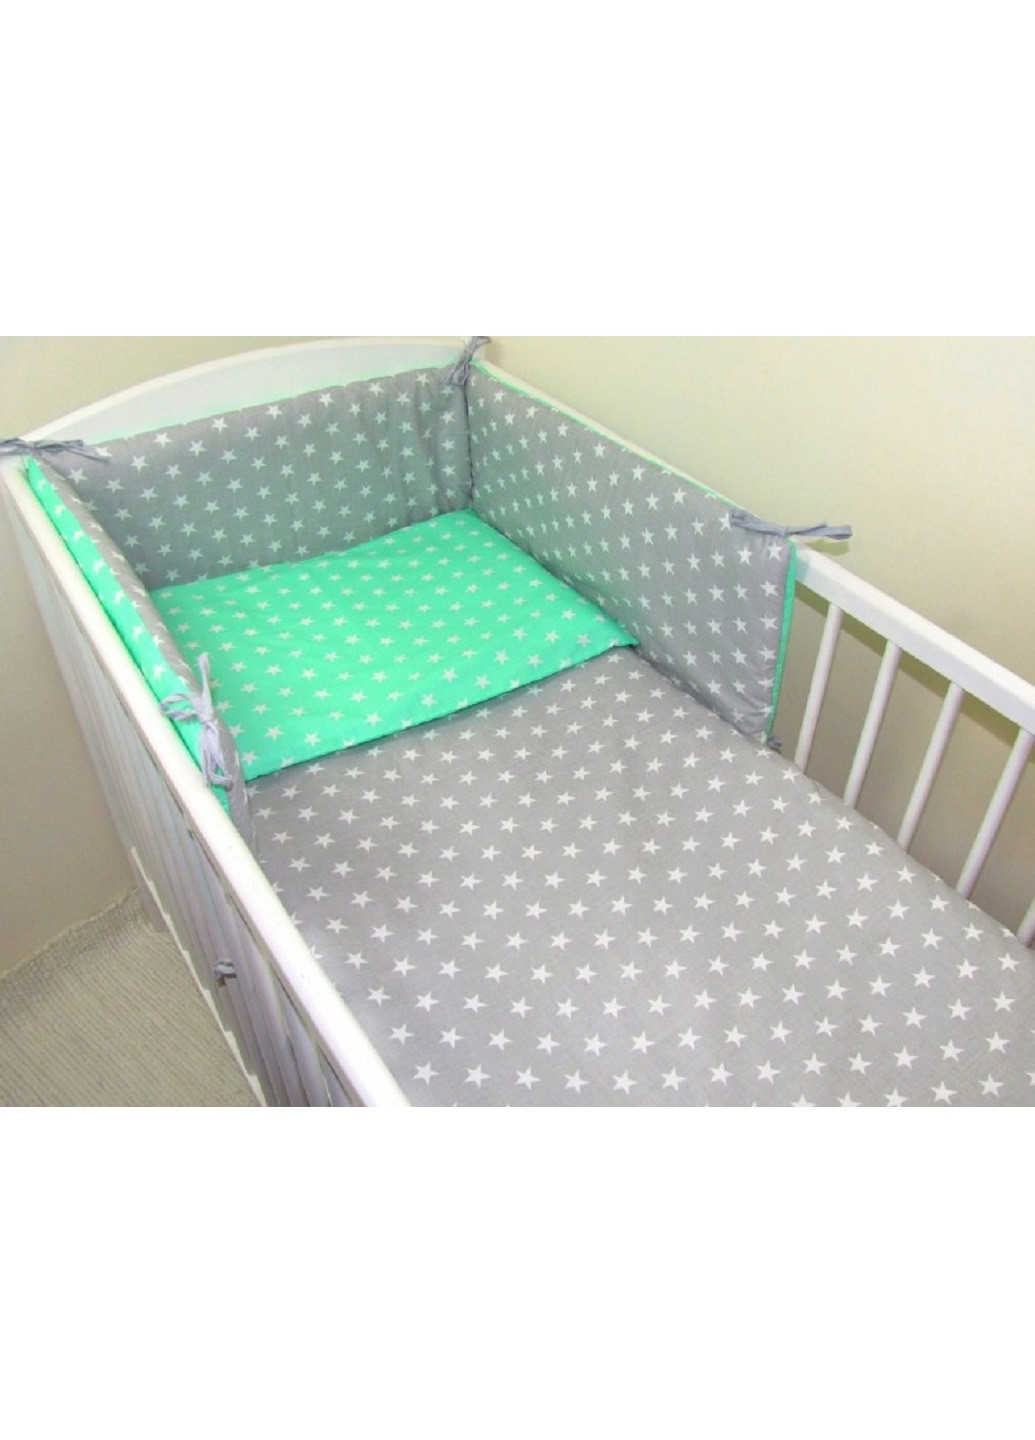 Комплект в детскую кроватку кровать люльку набор бортики защита на три стороны постельное белье ручной работы (28553-Нов) Unbranded (253182086)